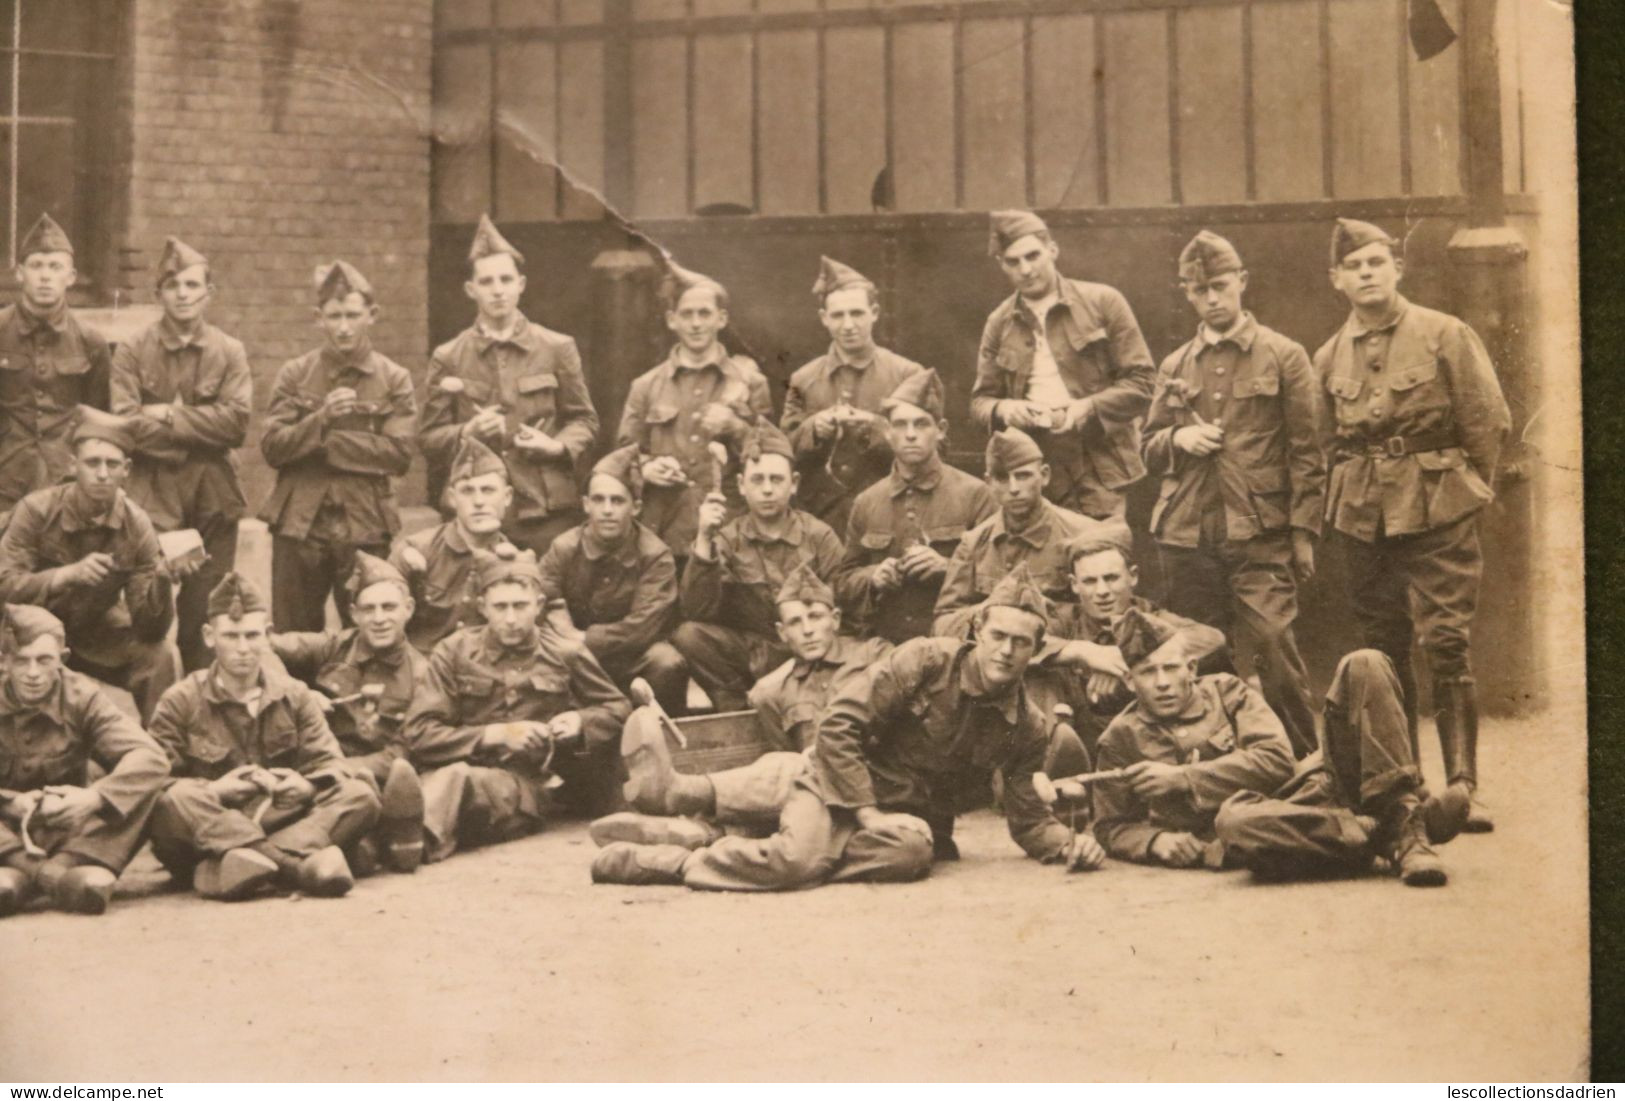 Carte postale photo groupe de soldats belges avec sabots soldaten